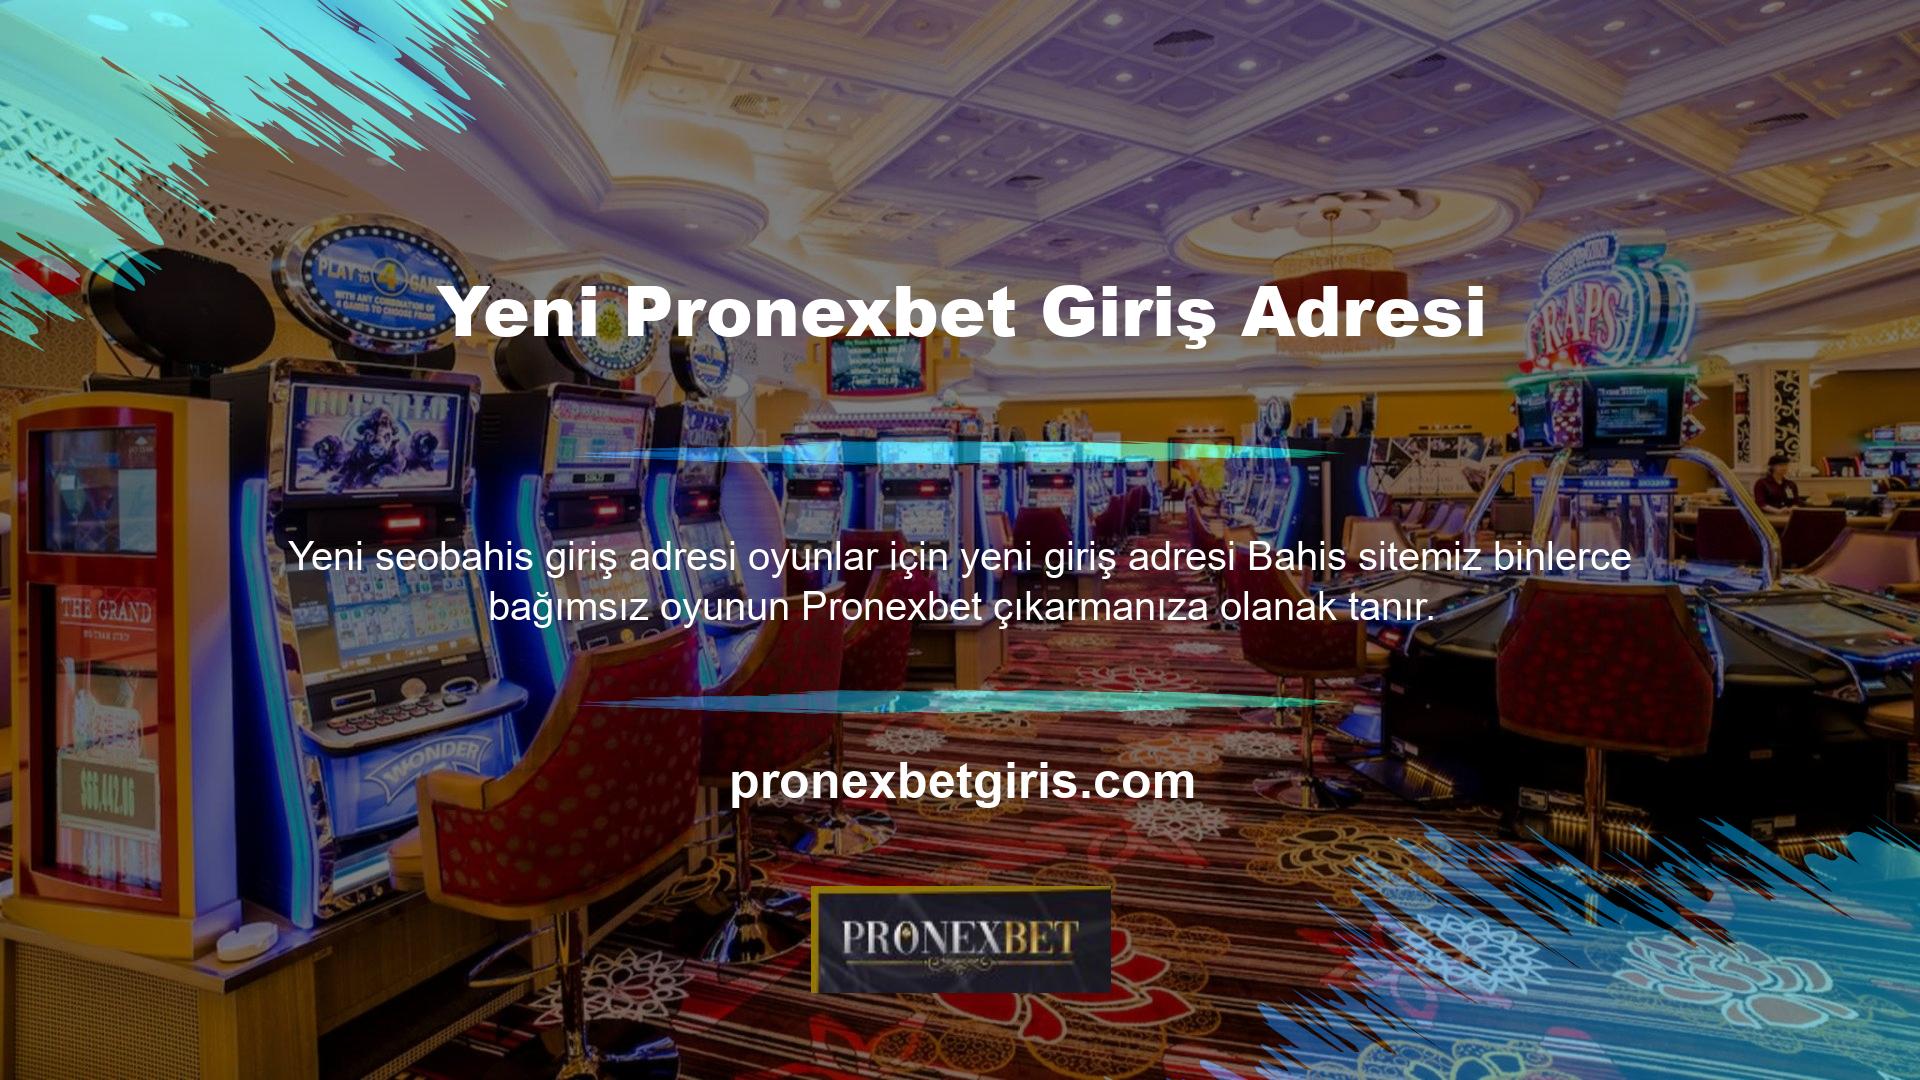 Kullanıcı deneyimi açısından güvenilir bir casino sitesi olan Pronexbet, güvenlik açısından yatırımcılara çeşitli ödeme seçenekleri sunmaktadır